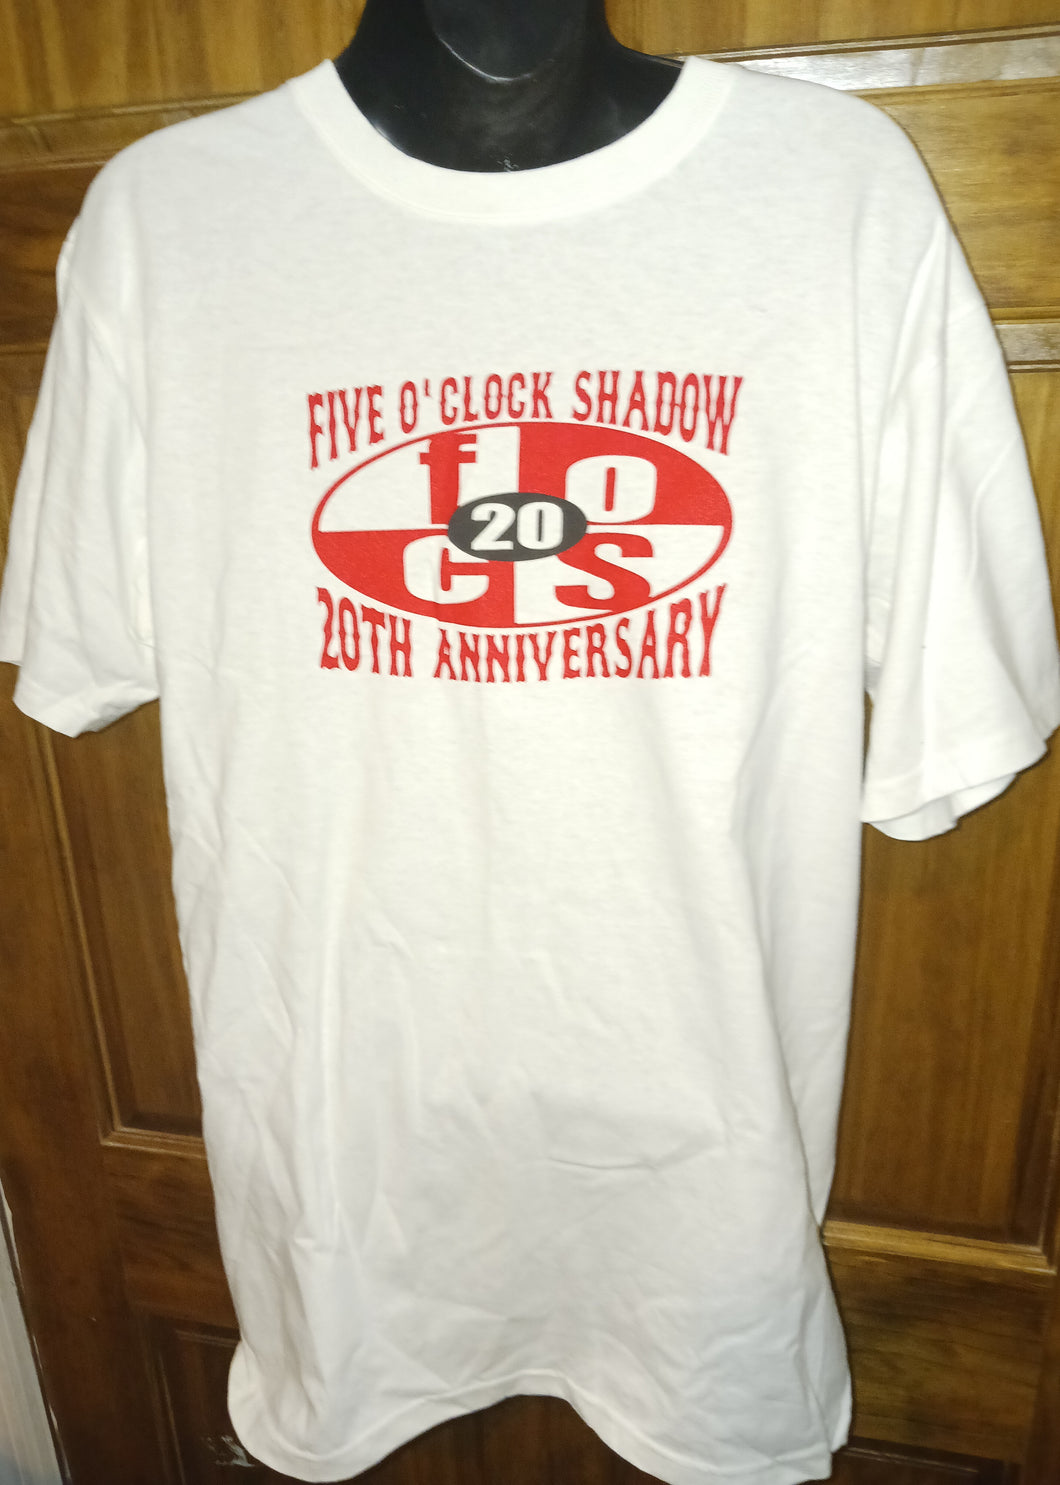 Five O'Clock Shadow Band 20th Anniversary Concert T-Shirt April 17 2011 Men's Size Medium Anvil